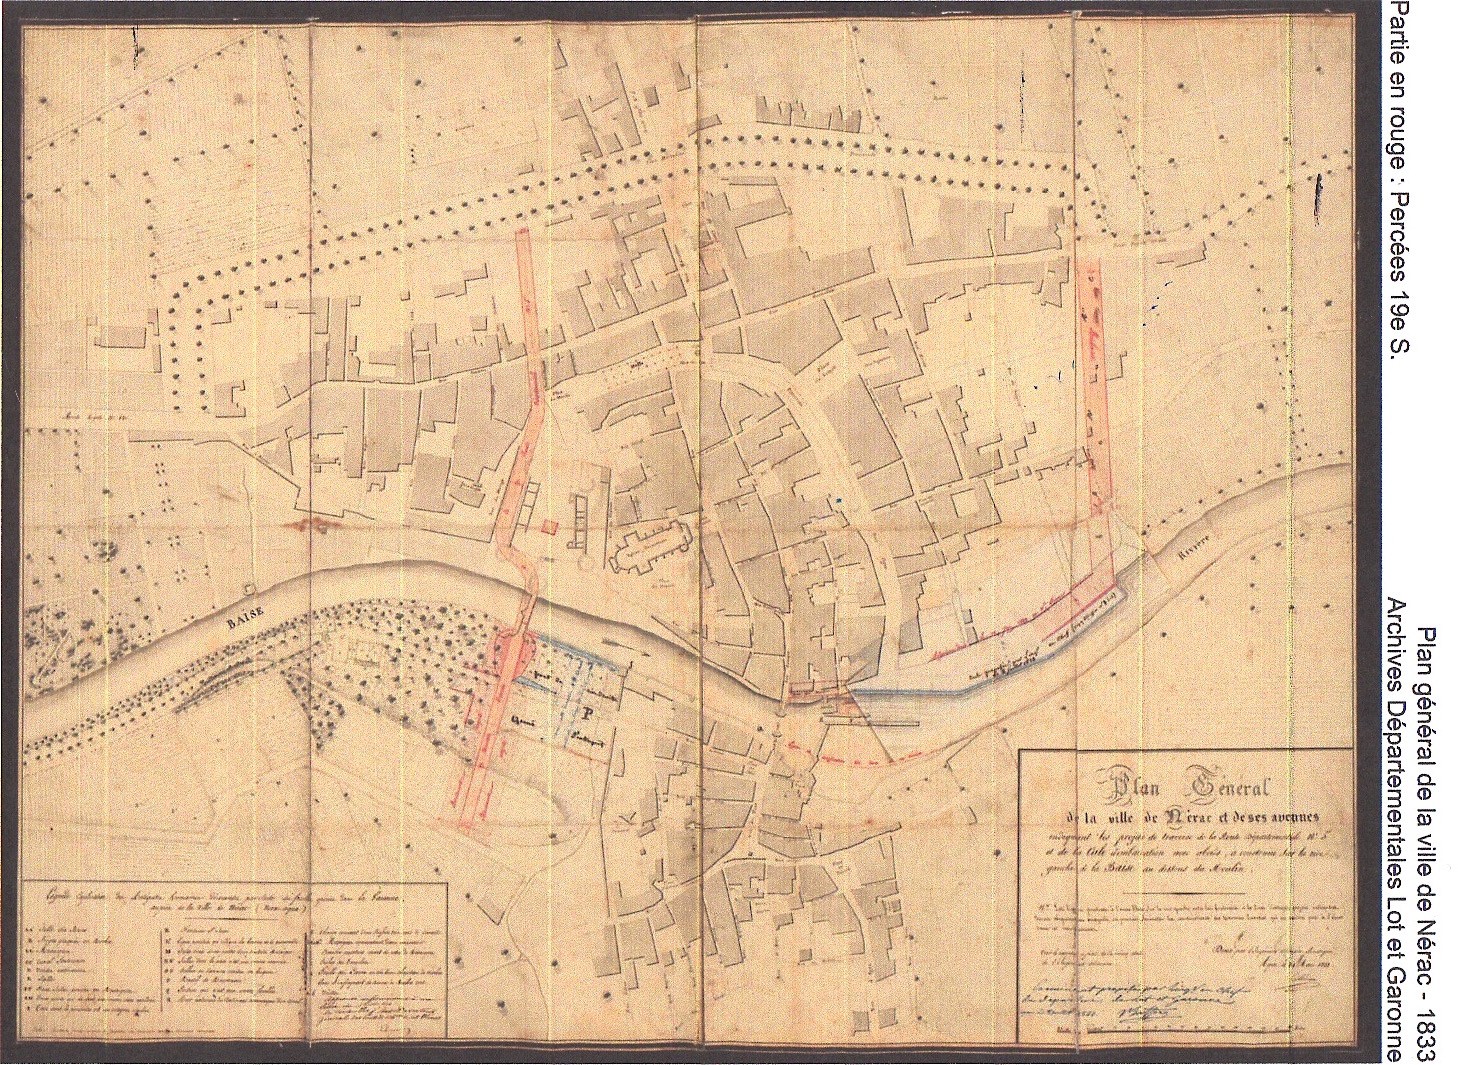 En rouge, les percées du XIXe siècle. Plan général de la ville de Nérac en 1833. Archives du département Lot et Garonne.